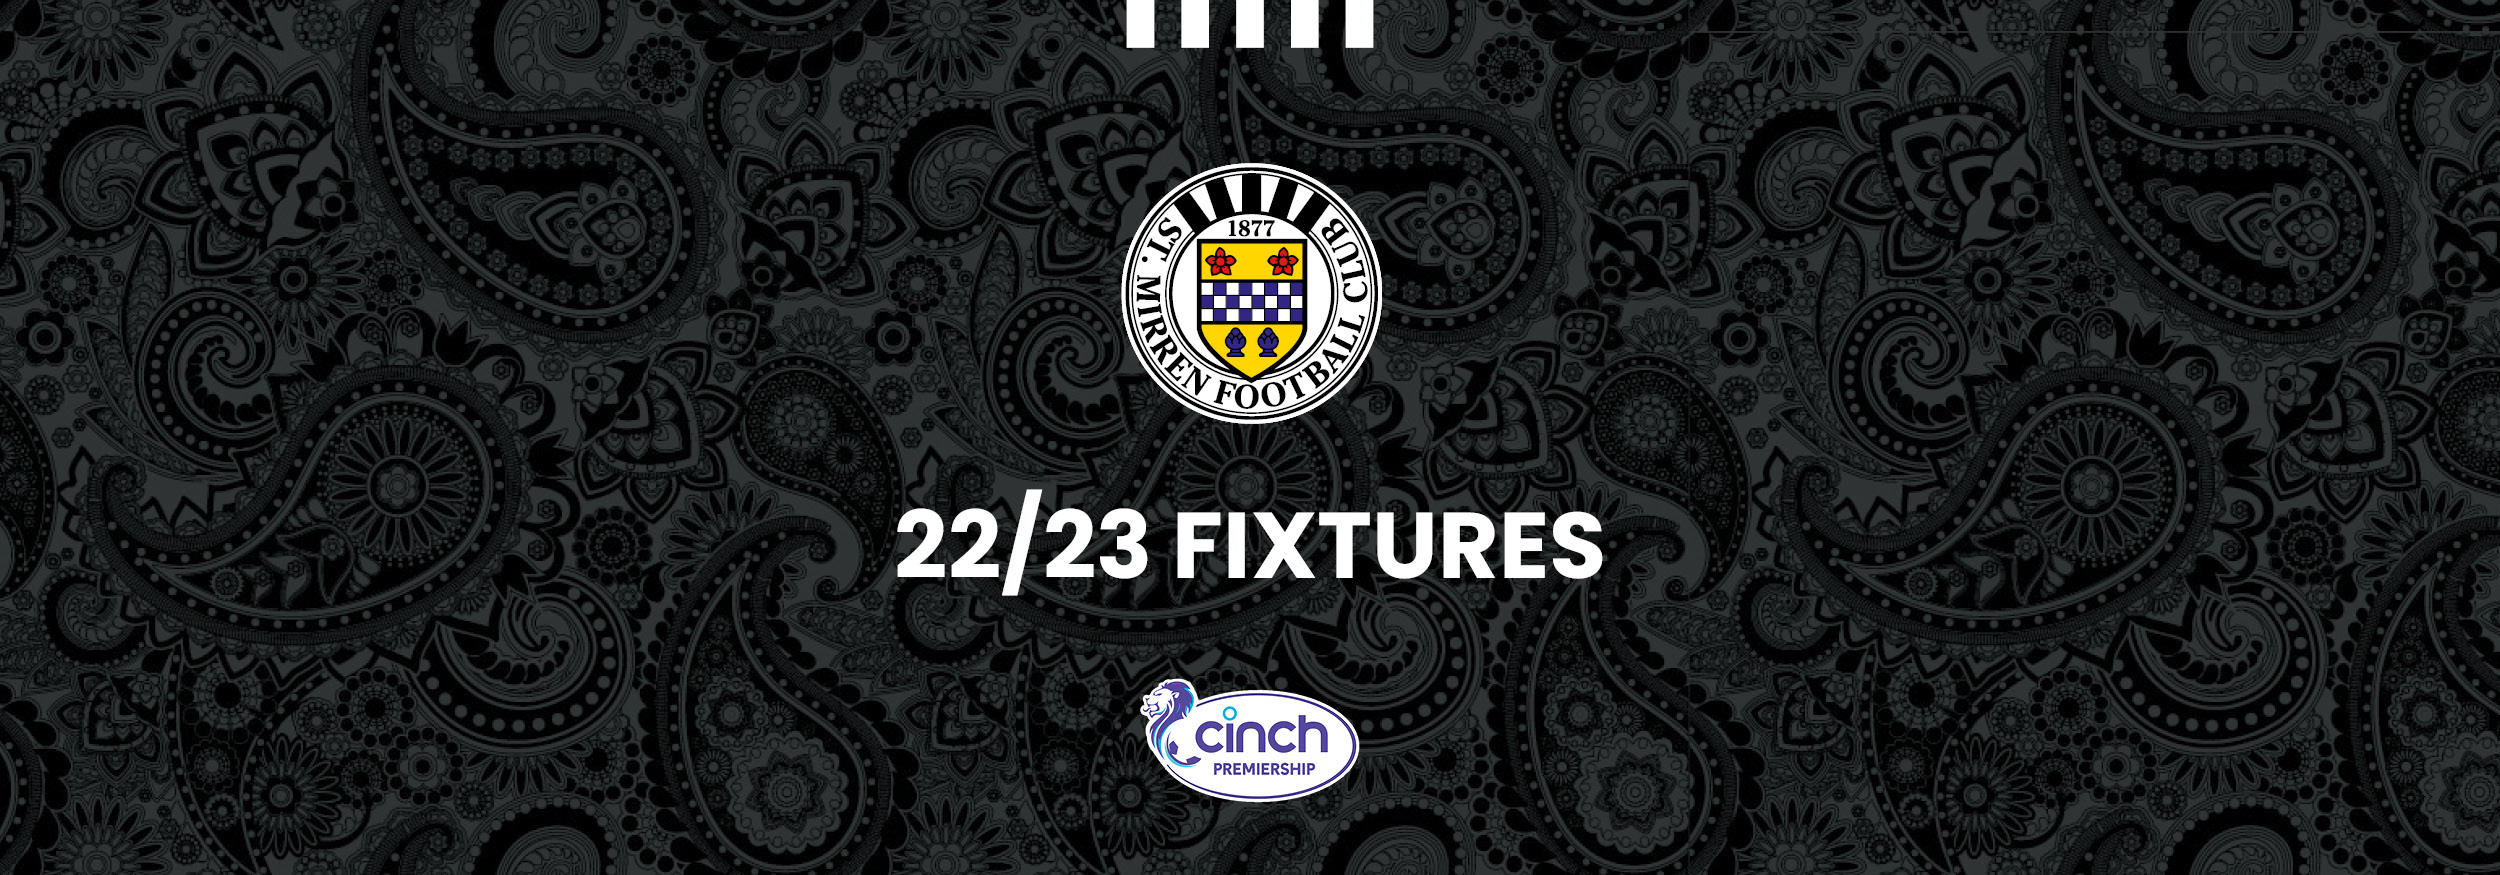 2022/23 cinch Premiership fixtures announced